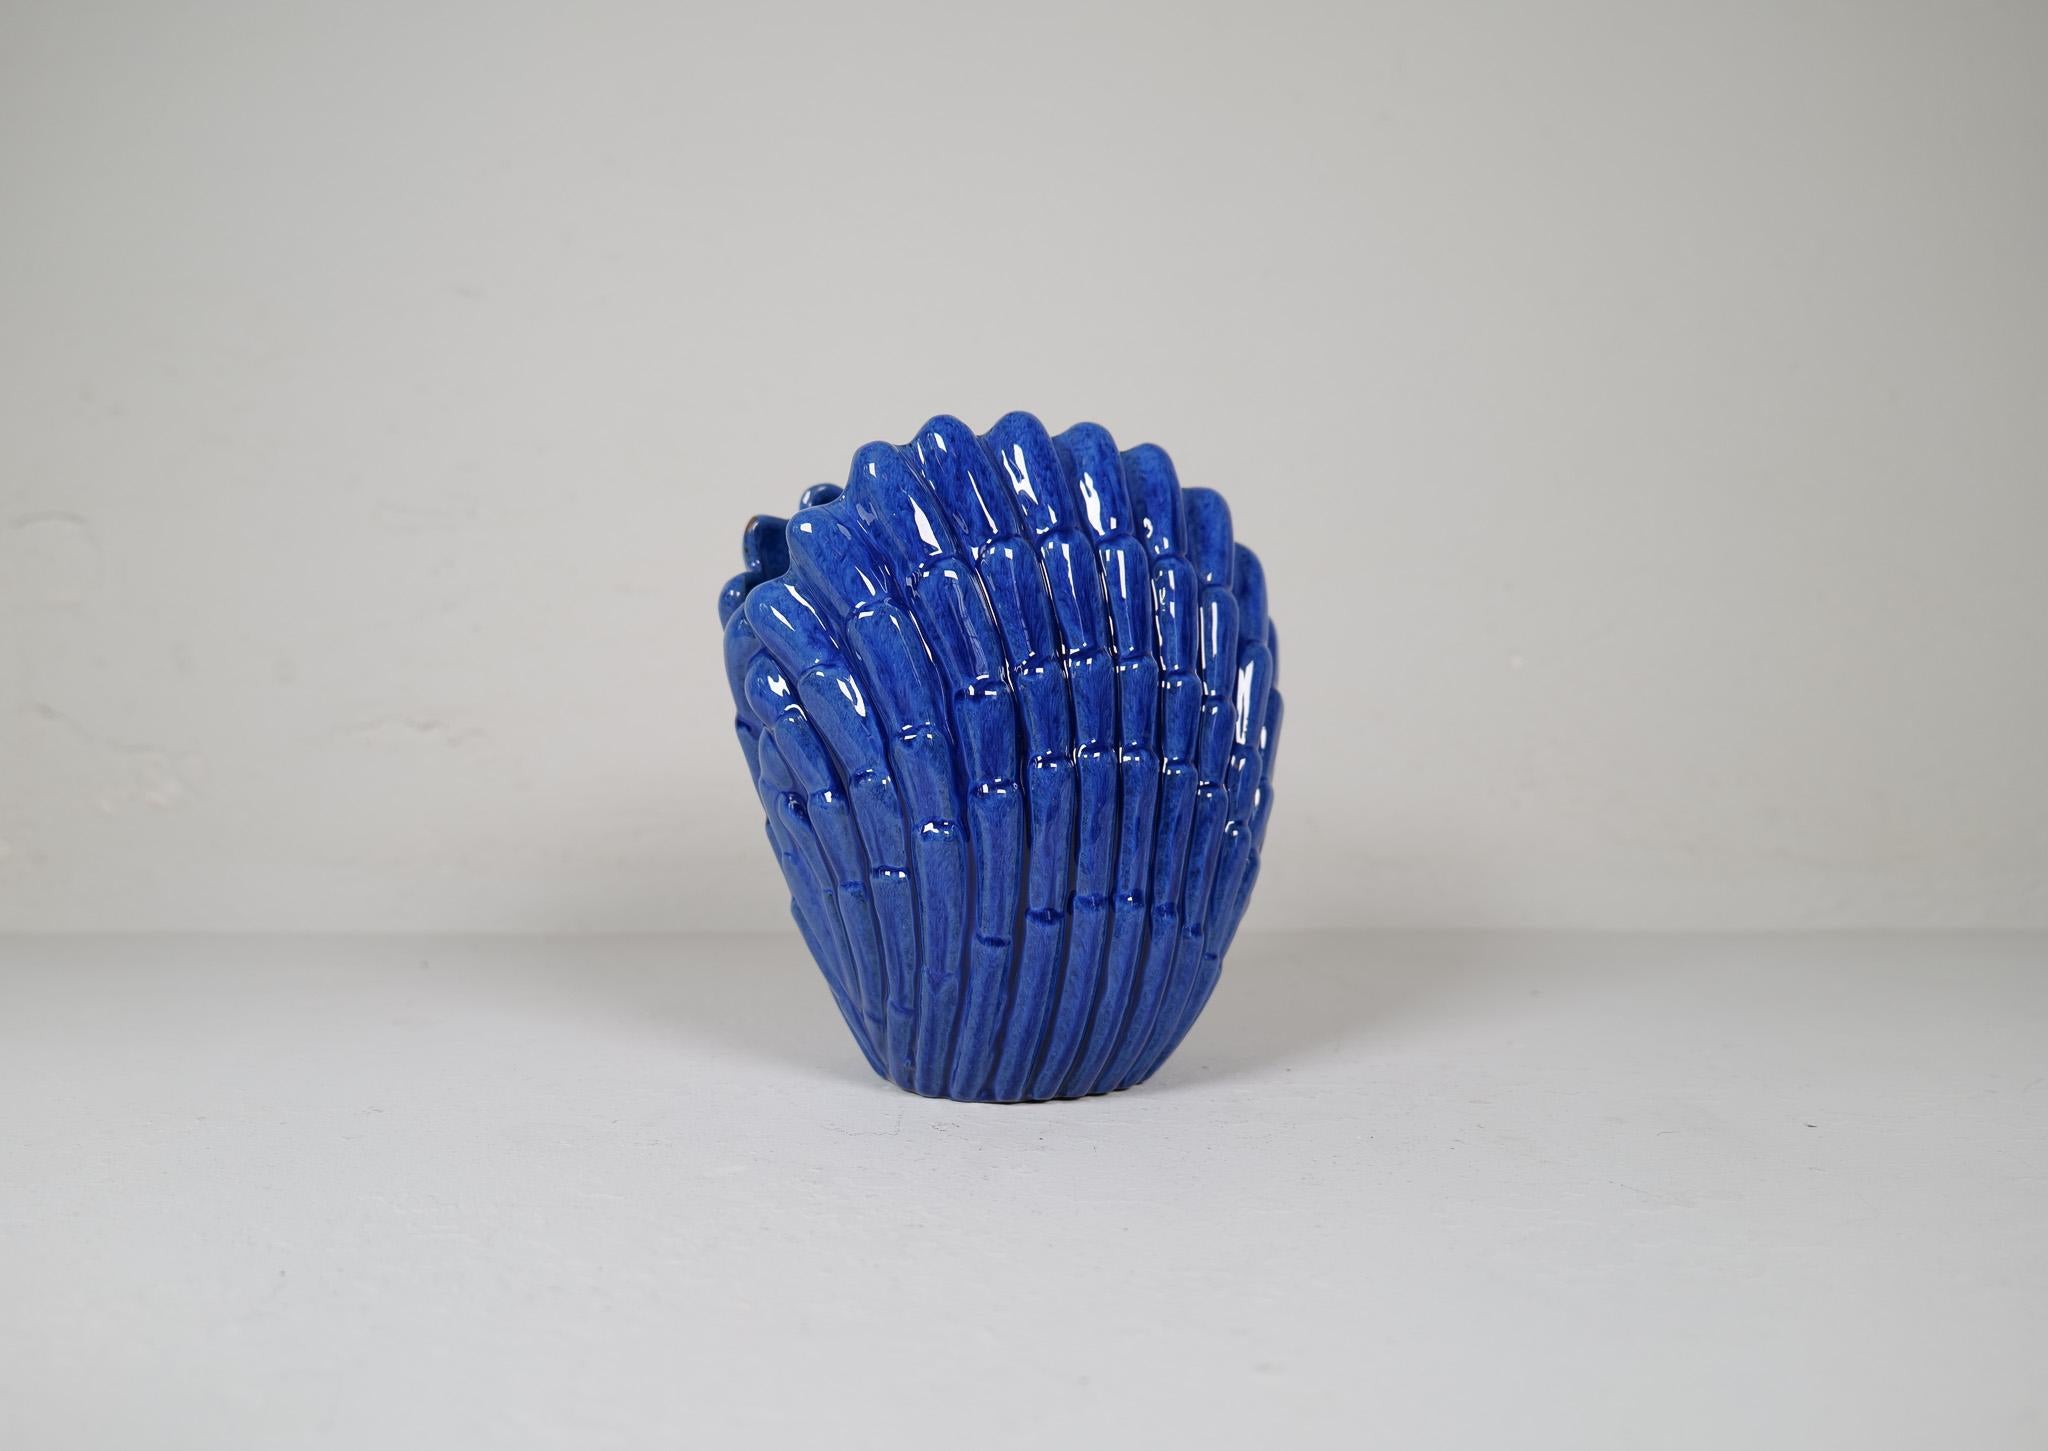 Unglaubliche Vase, geschaffen von Vicke Lindstrand Ekeby, Schweden, Ende der 1940er Jahre. Die Muschelvase ist aus Keramik gefertigt und mit einer wunderschönen blauen Glasur überzogen, die die kunstvoll geformte Keramik bedeckt. 

In sehr gutem